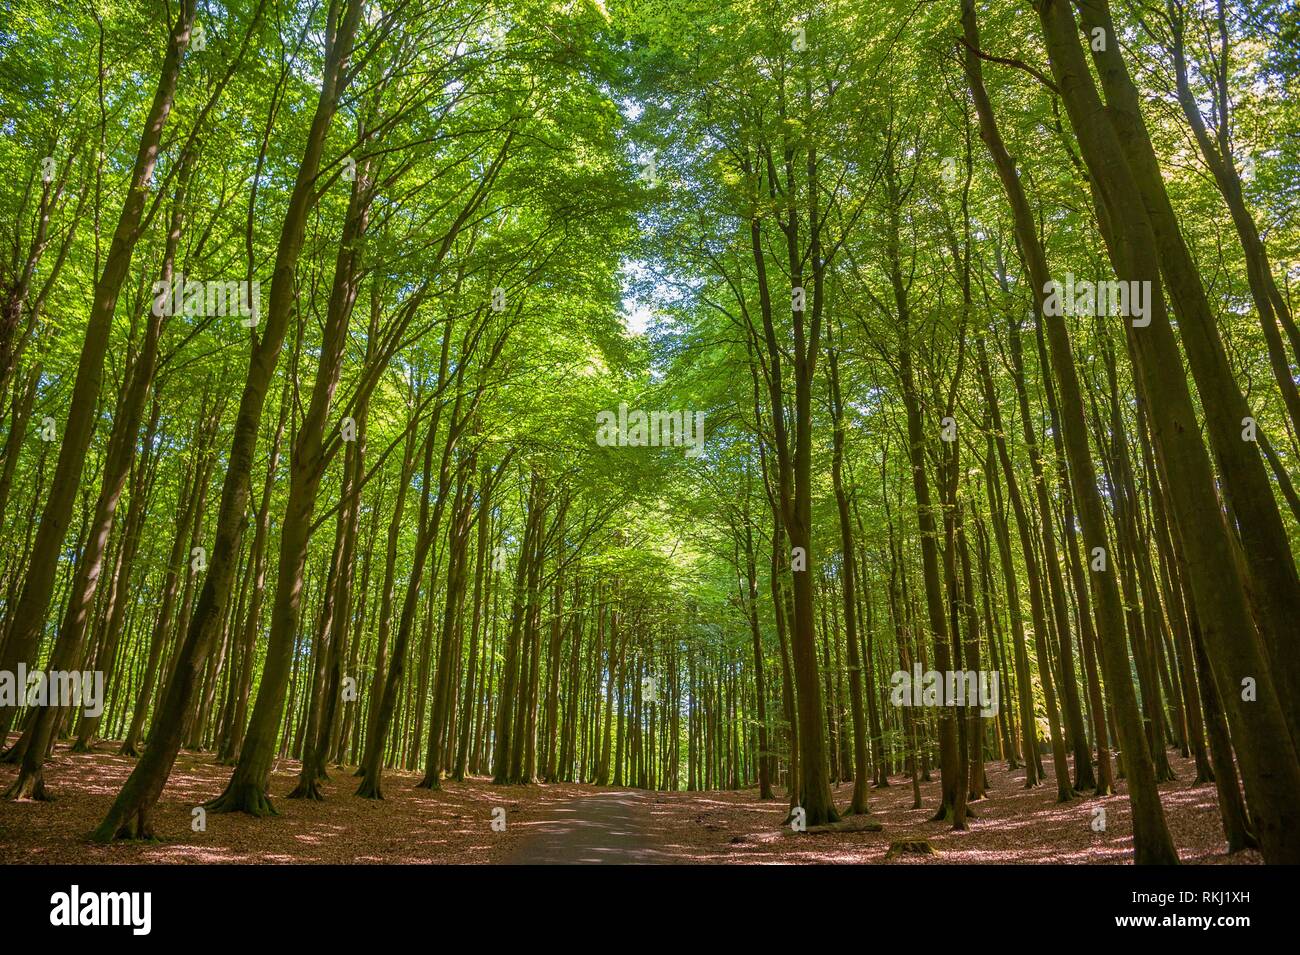 Beech forest in the National Park Jasmund, Sassnitz, Rügen, Mecklenburg-Vorpommern, Germany, Europe. Stock Photo